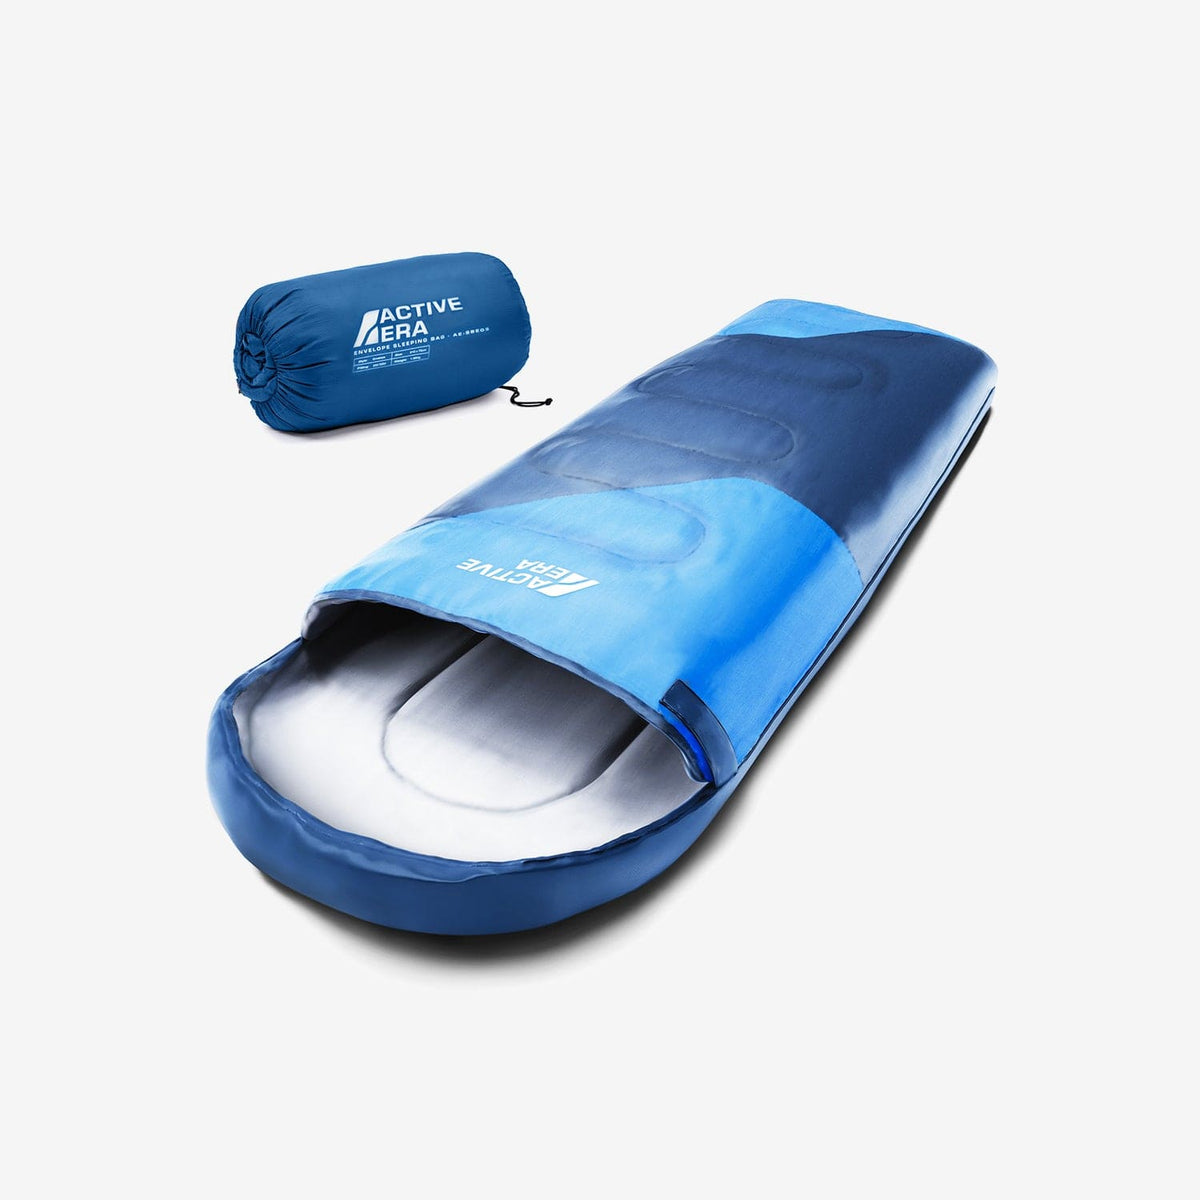 Saco de dormir ligero e impermeable de primera calidad - Azul